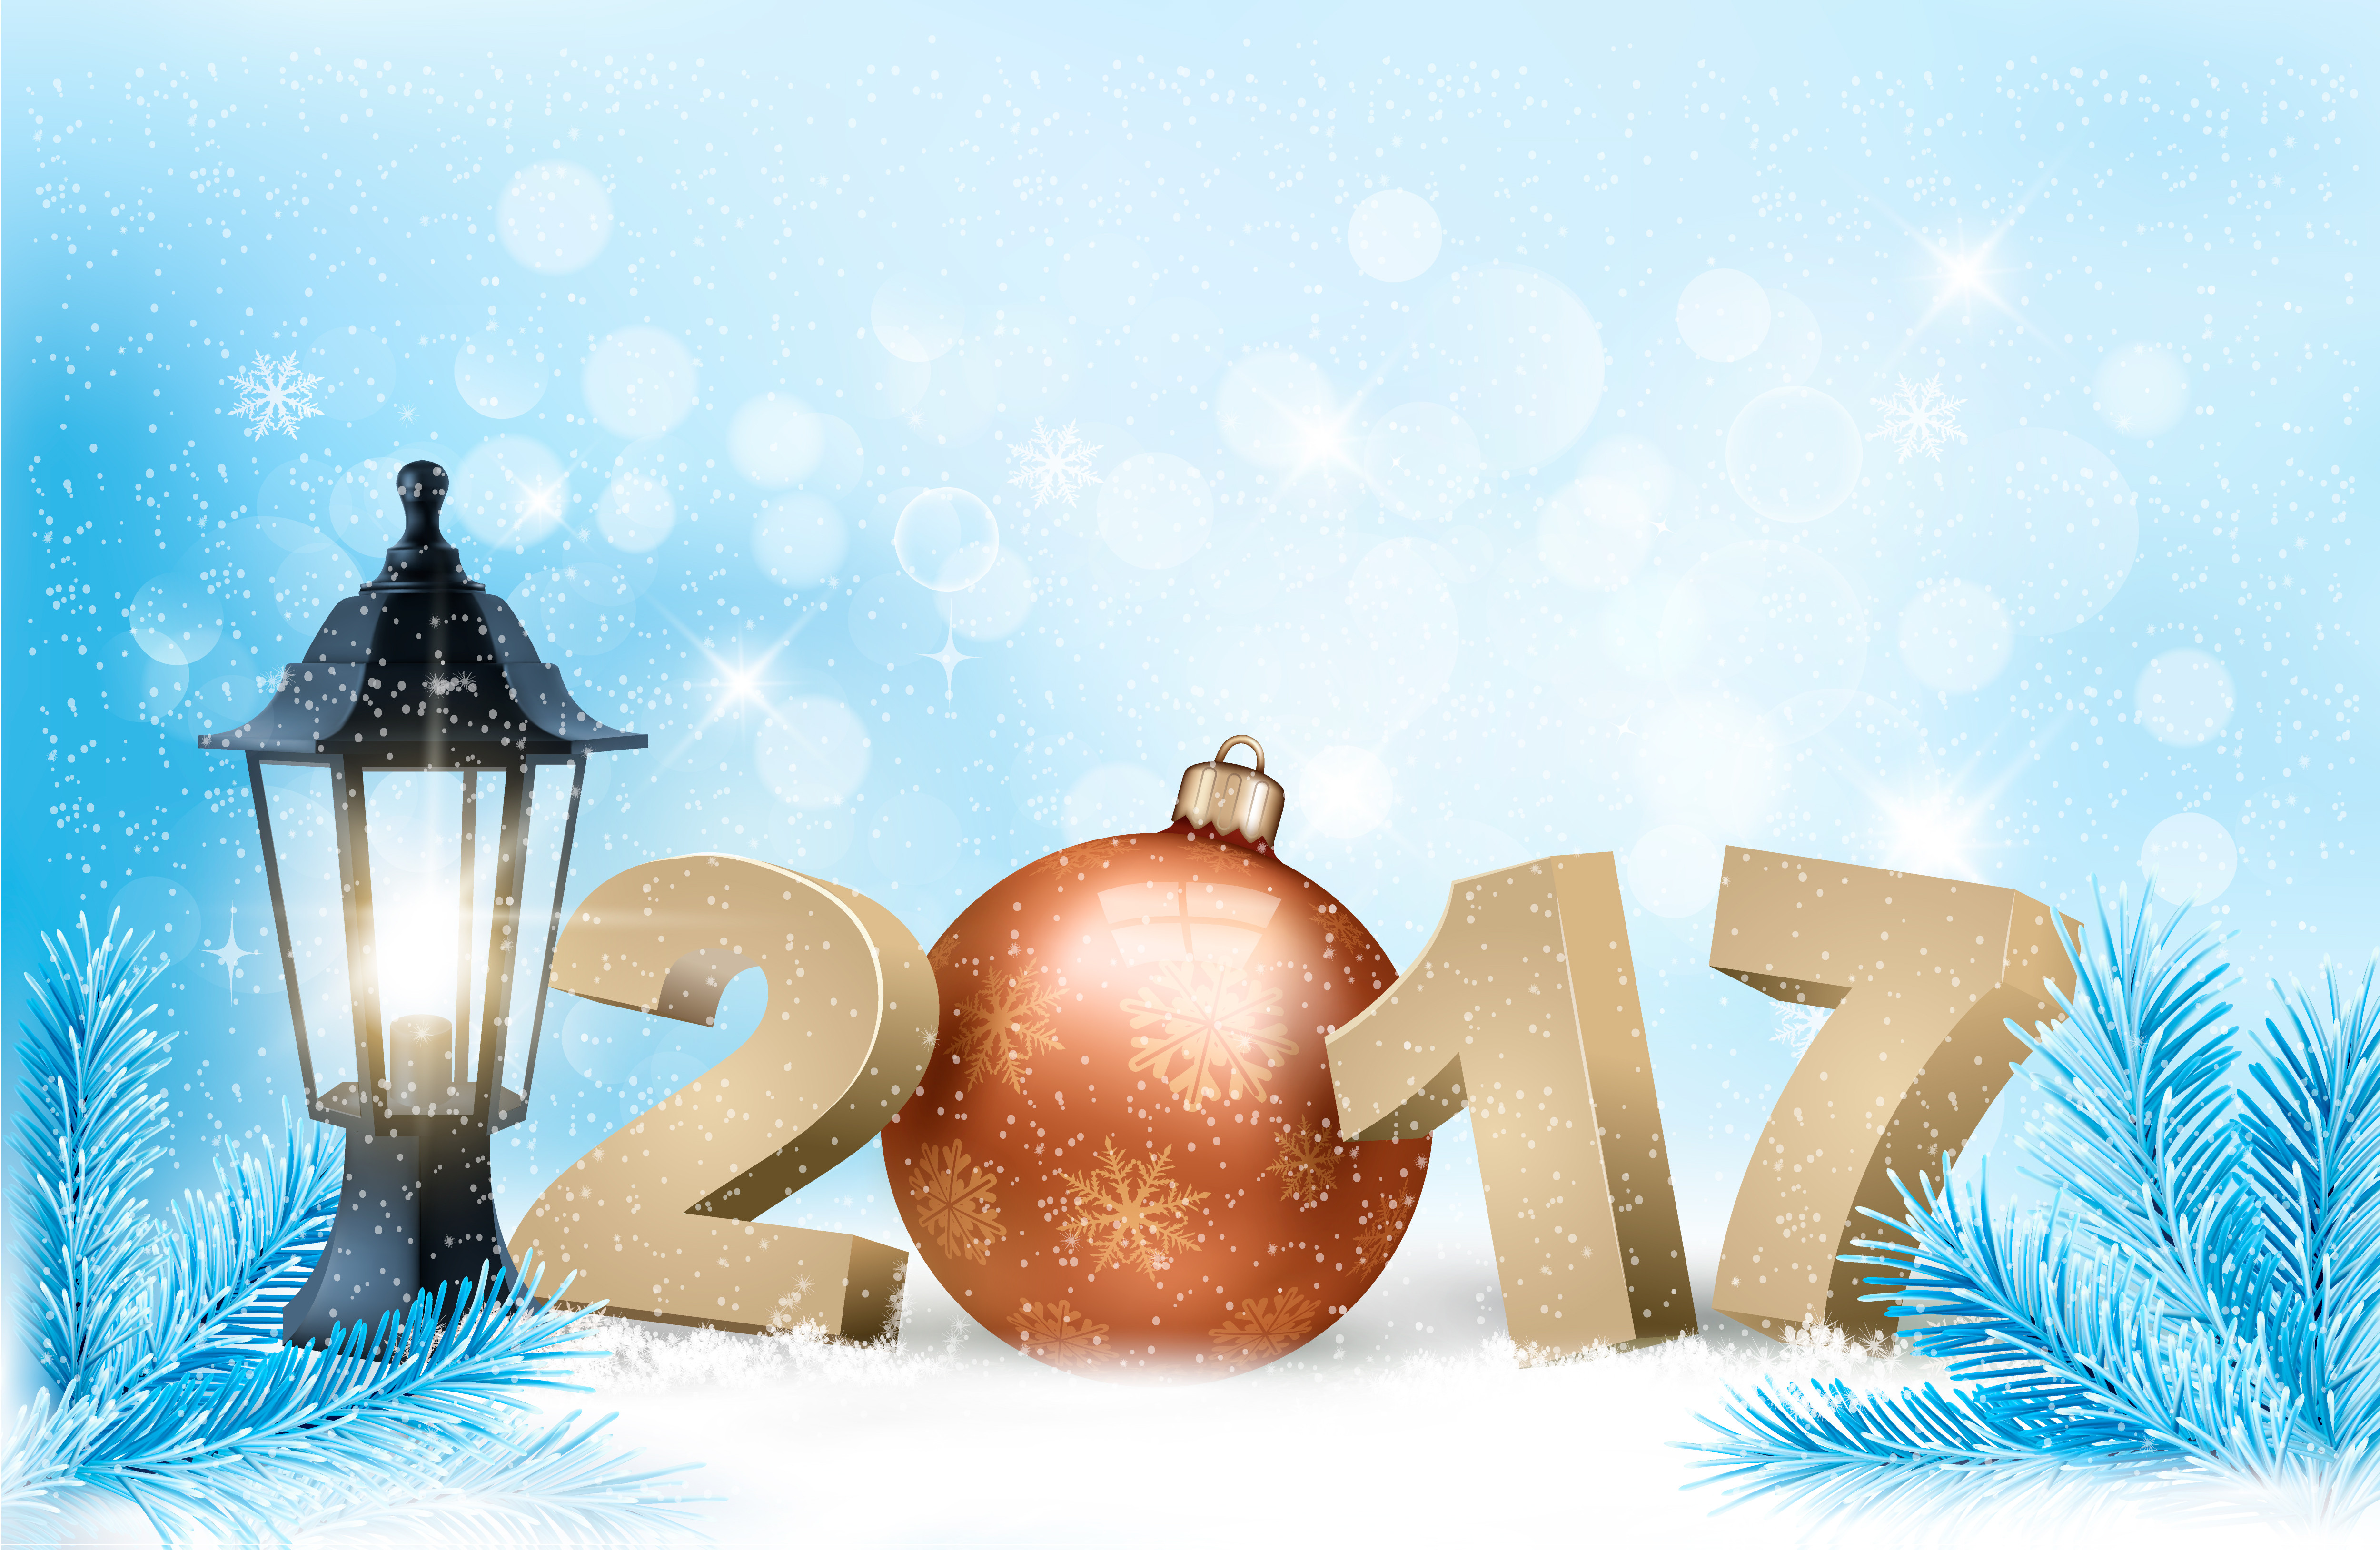 21 декабрь 2016. Обои на рабочий стол новый год. С новым годом. Новогодняя открытка. Обои на рабочий стол зима новый год.